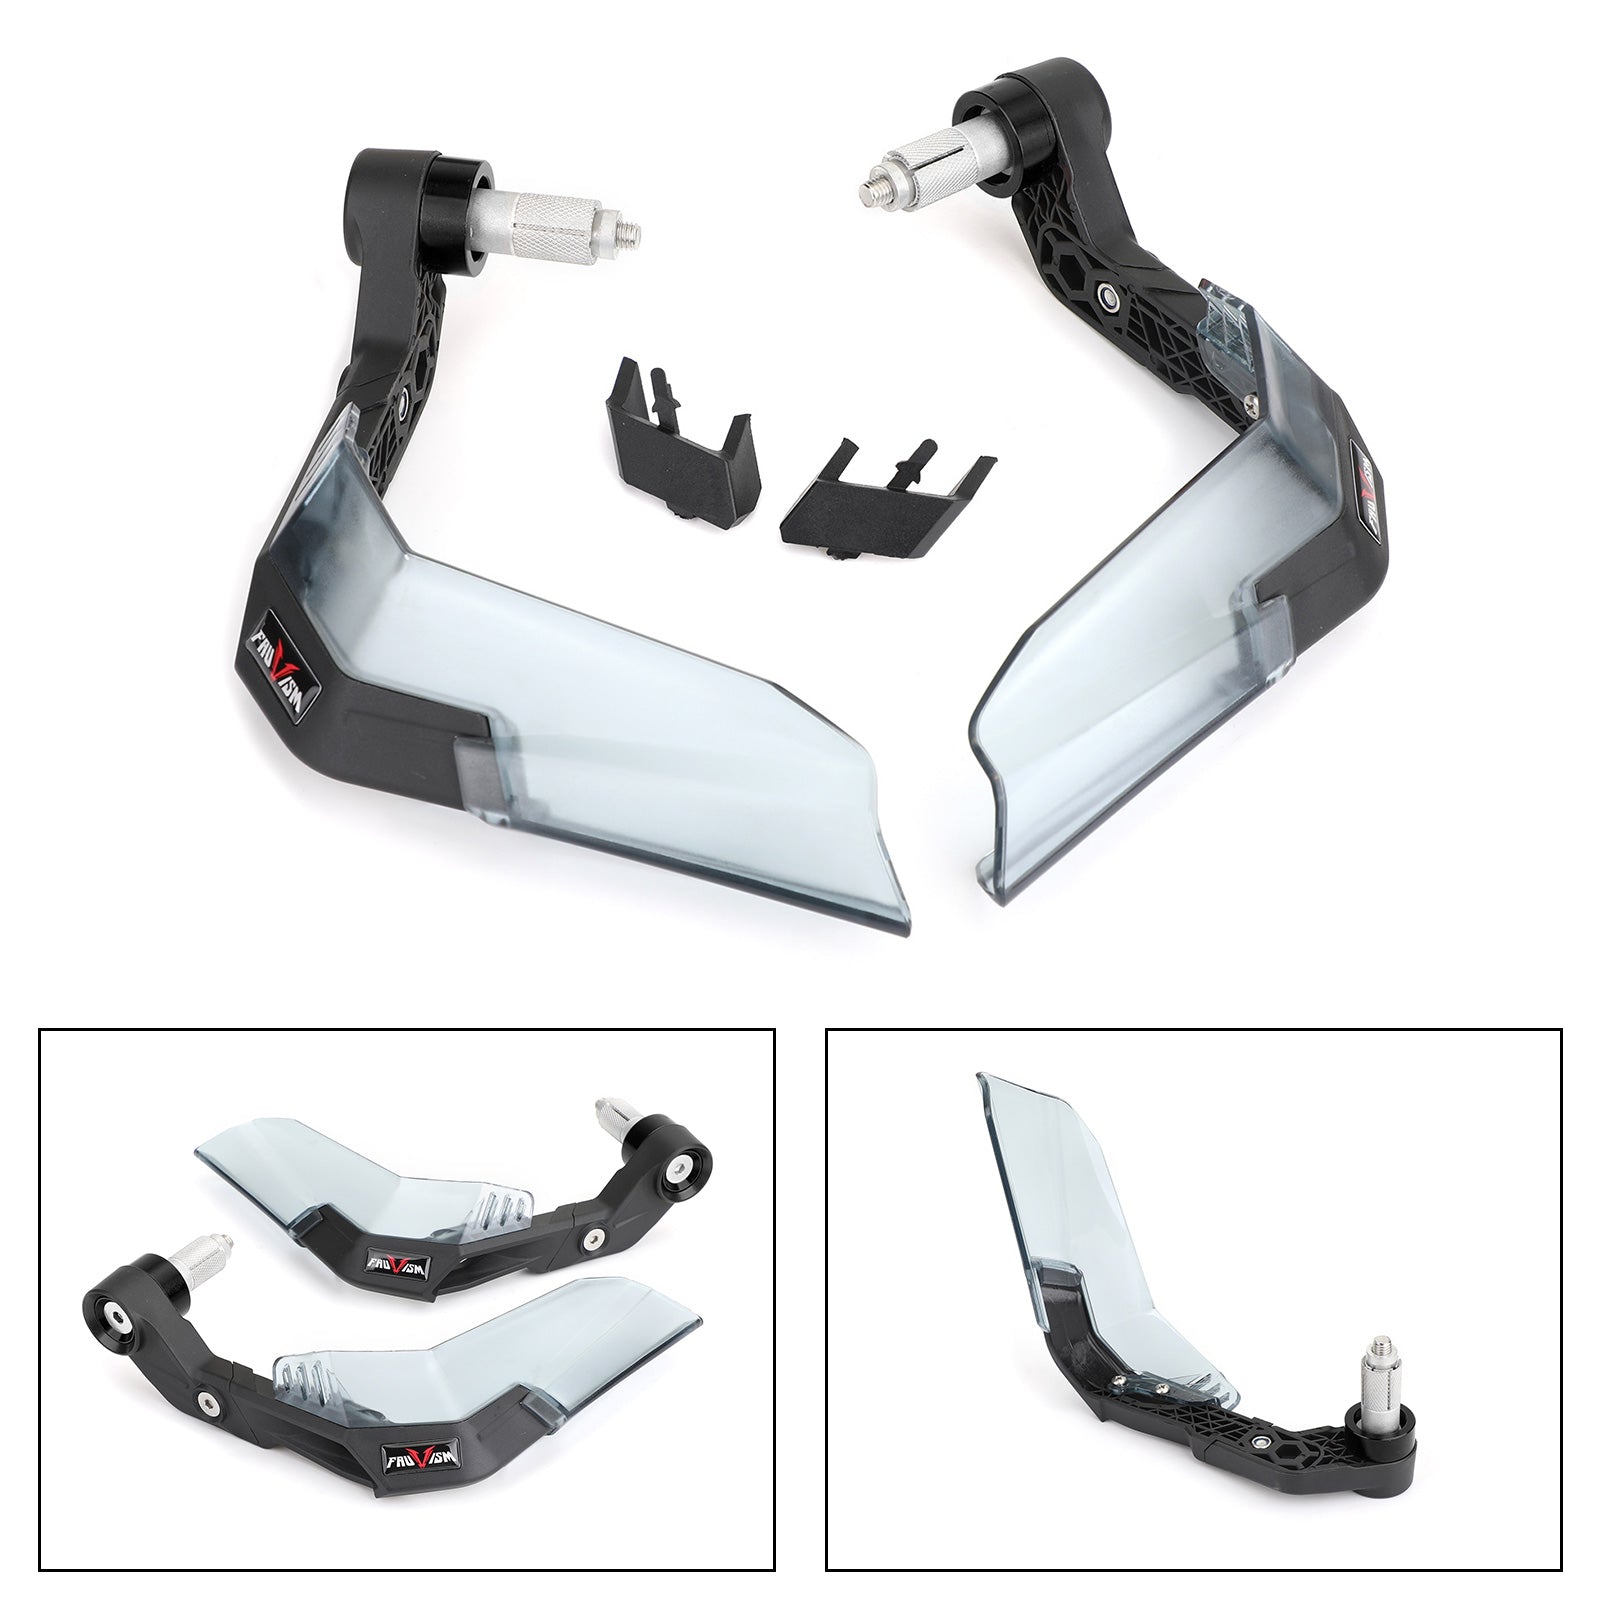 Protector Universal de carcasas de manillar para guardamanos de motocicleta para Honda Yamaha KTM genérico